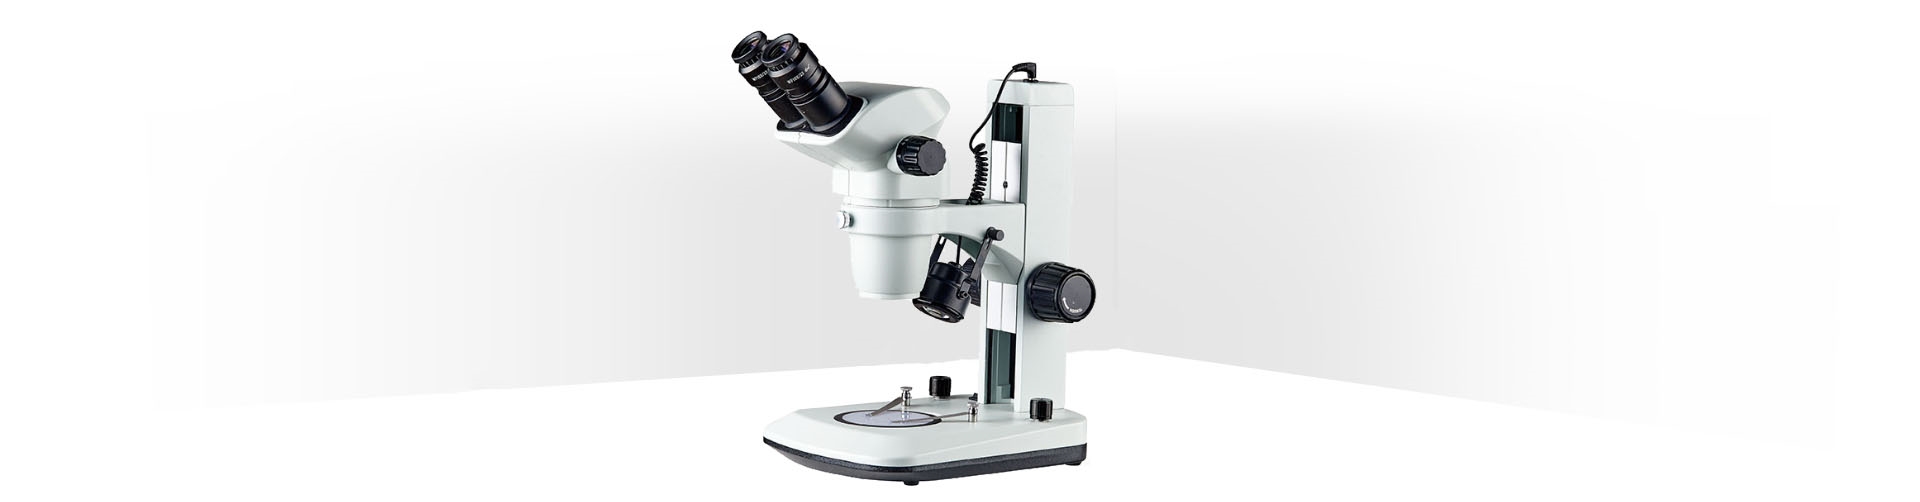 SM-2A系列连续变倍体视显微镜